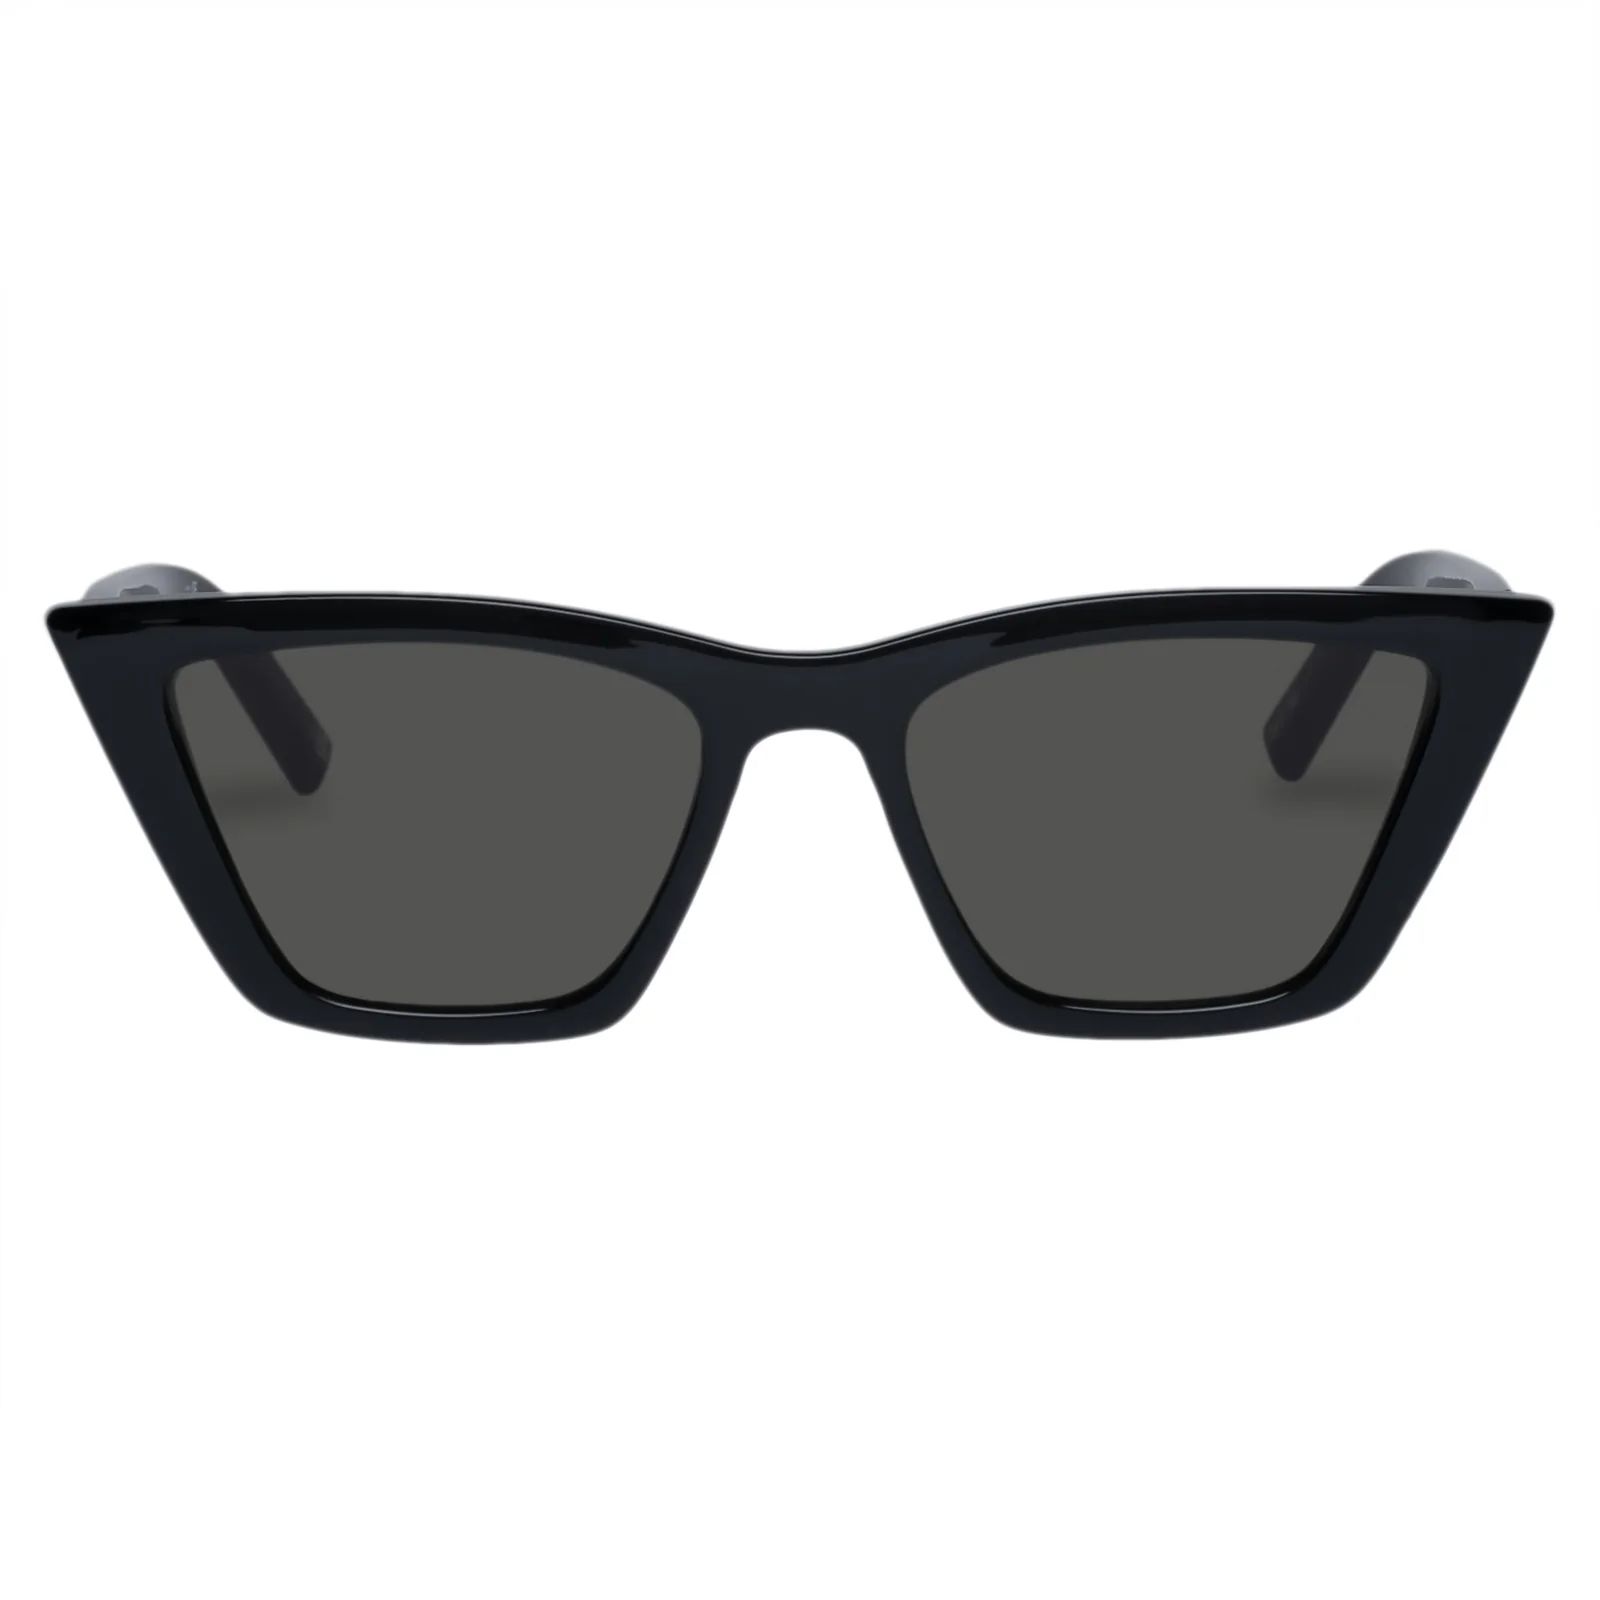 VELODROME | BLACK | Le Specs (Sunglasses)